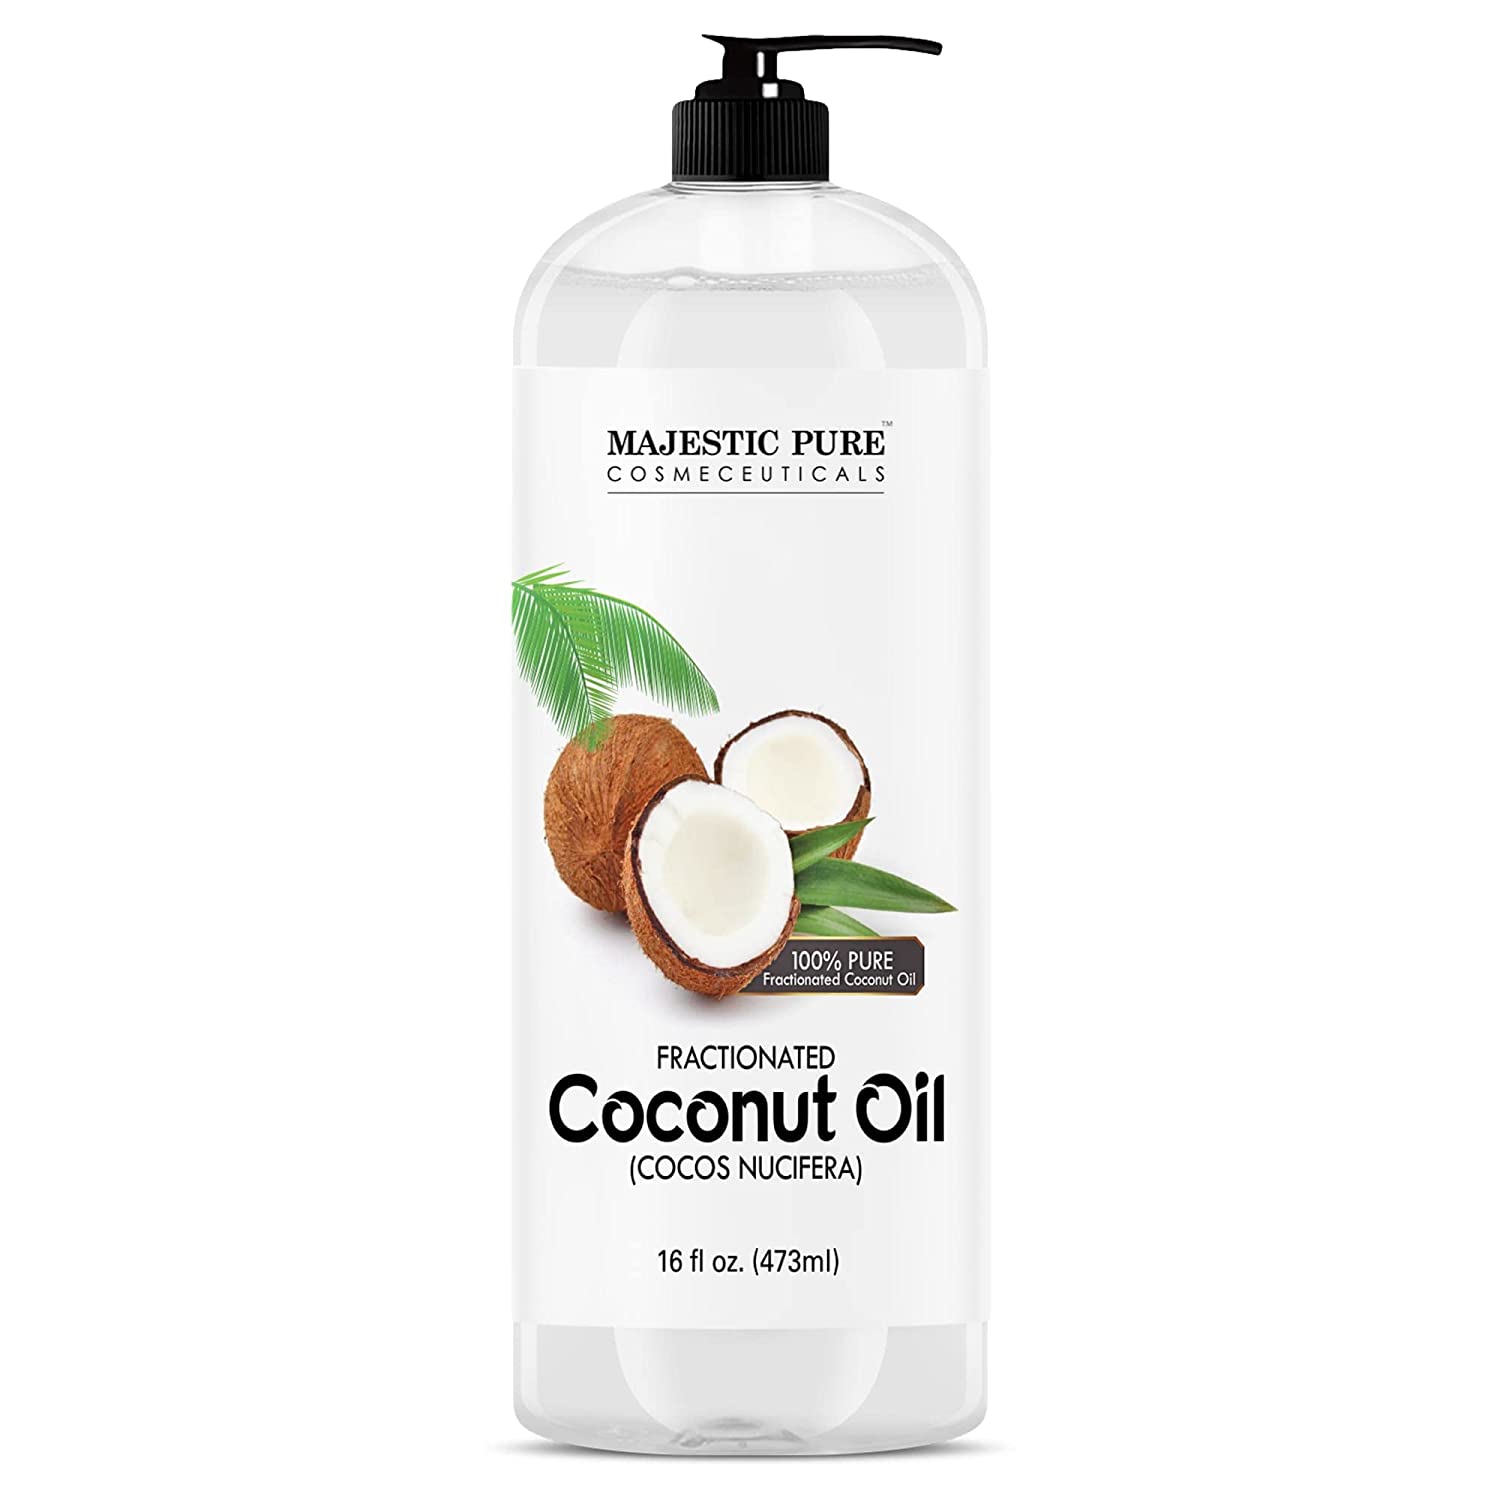 MAJESTIC PURE Multi-Purpose Fractionated Coconut Oil